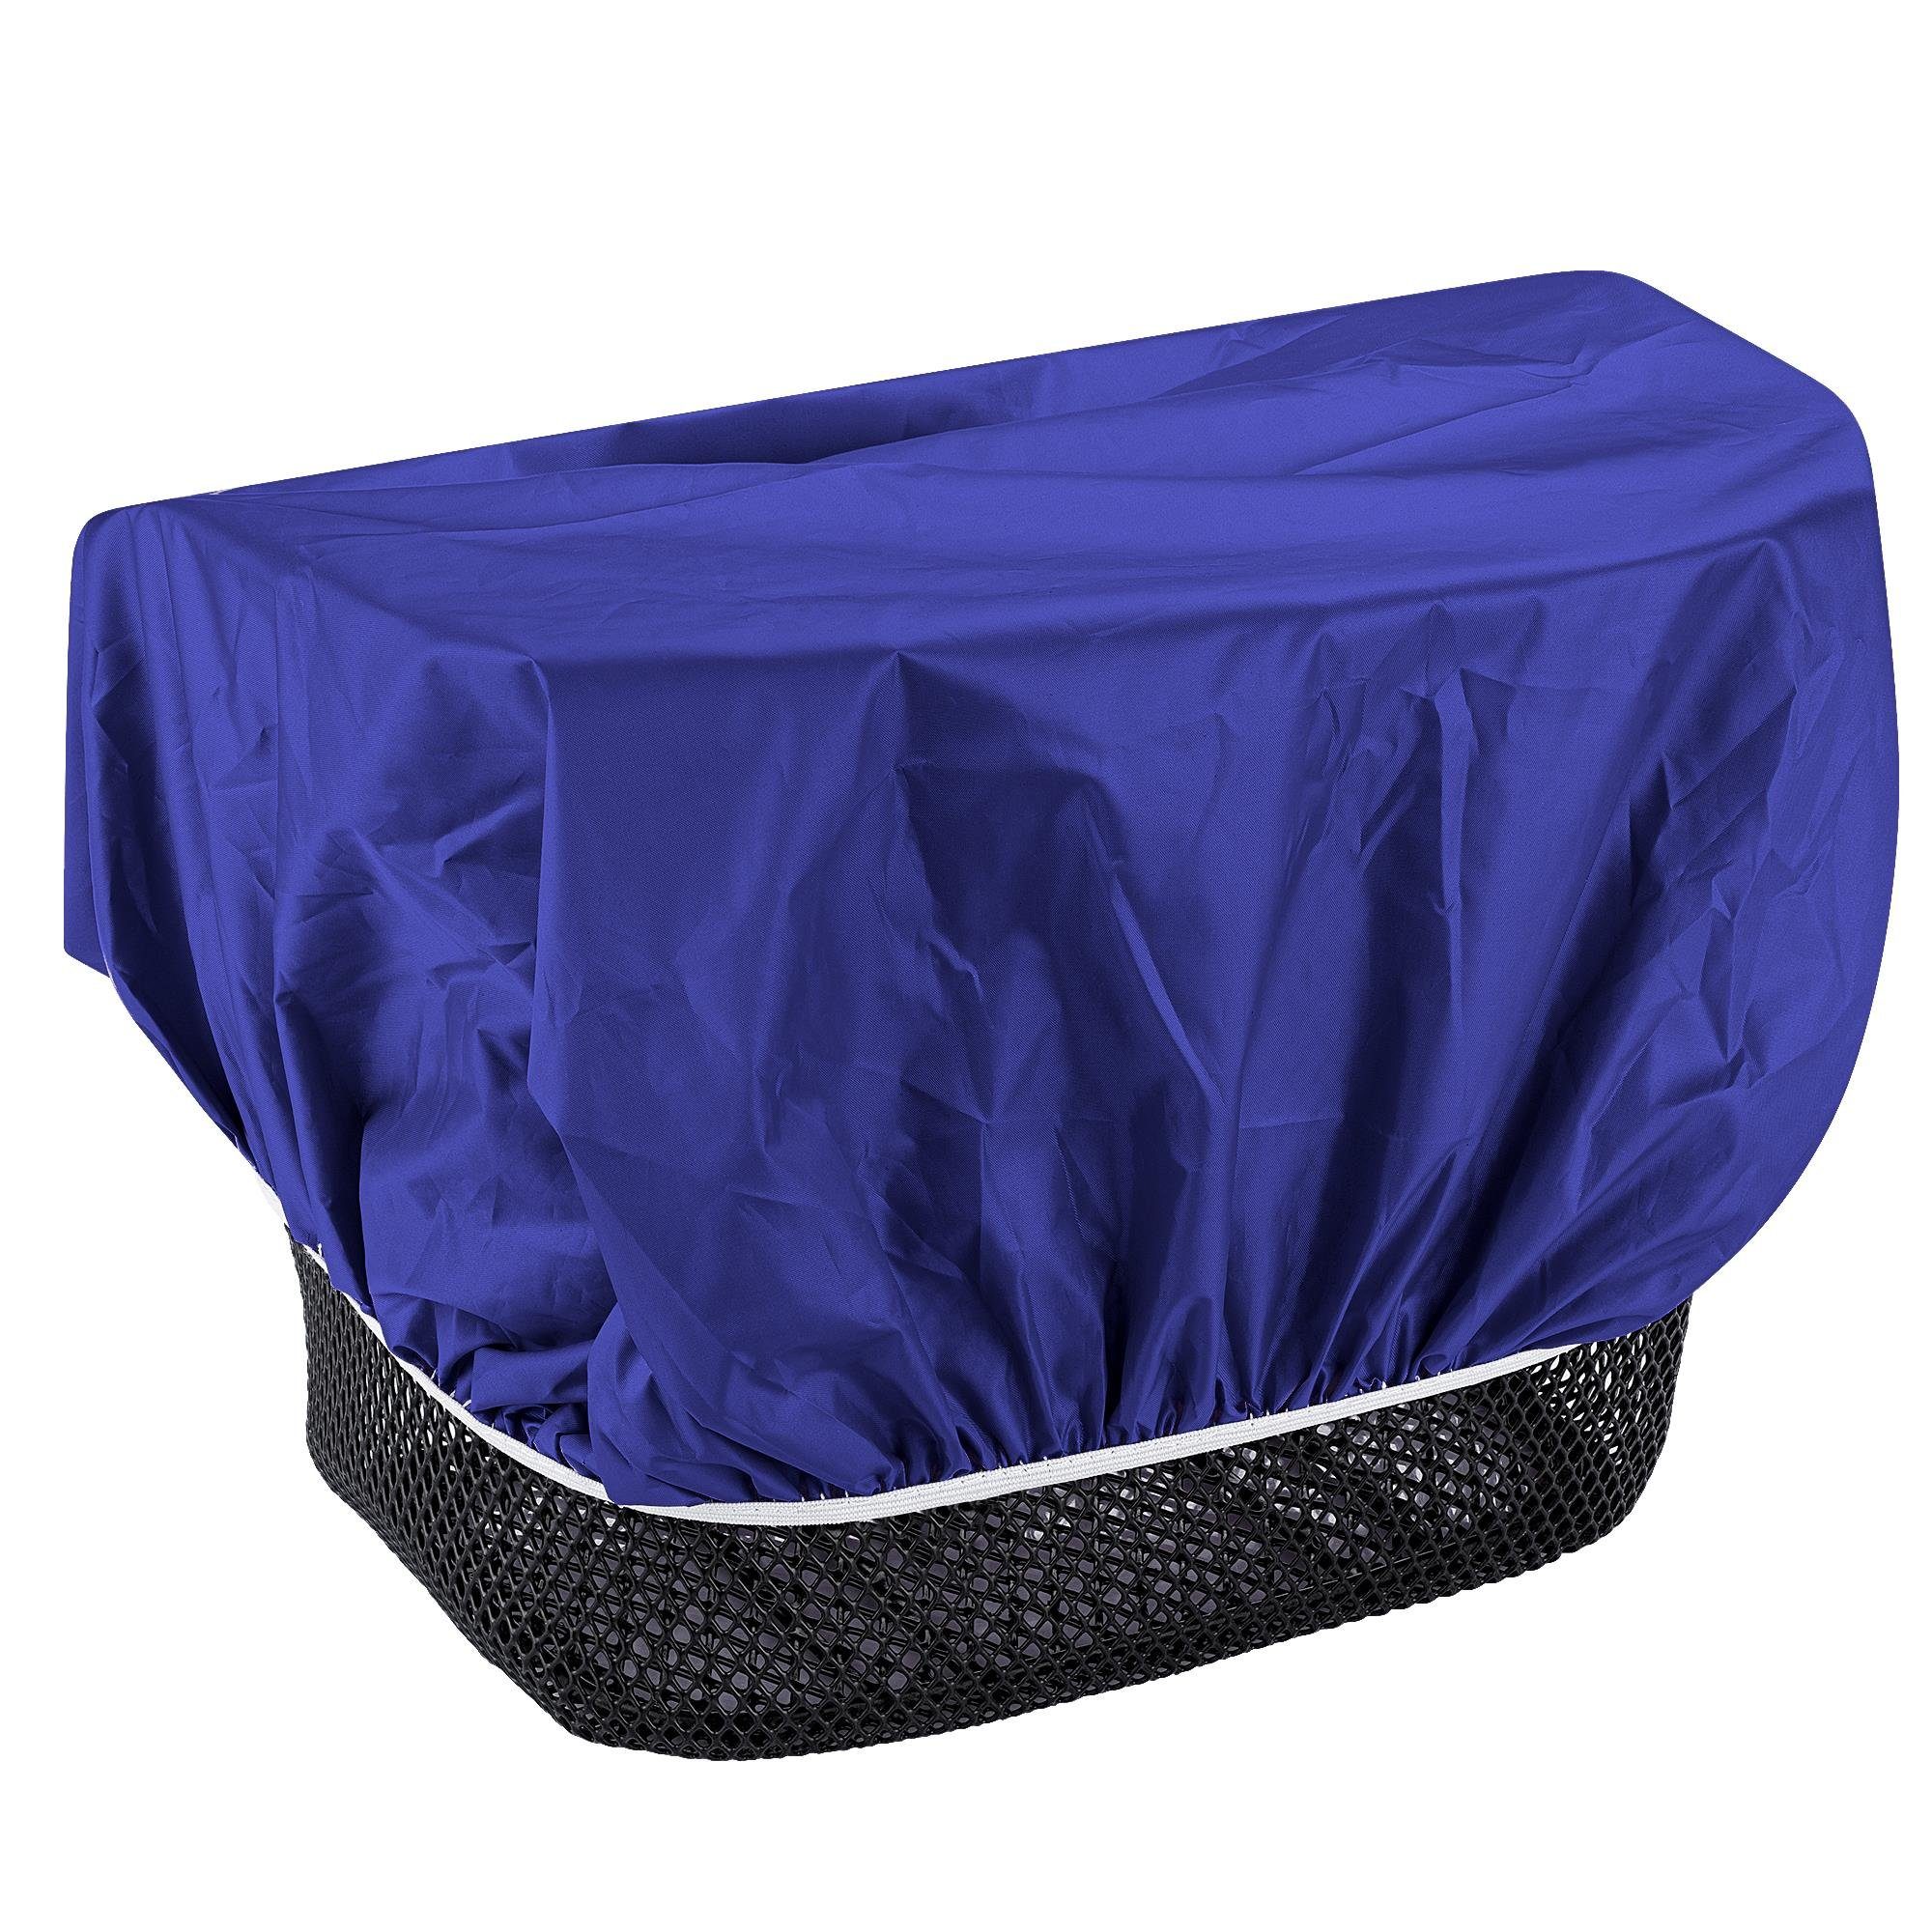 Regenschutz EAZY Blau CASE Körbe Regenhülle Fahrradkorb wasserabweisend Korb, für Universal Fahrradkorb für Korbüberzug